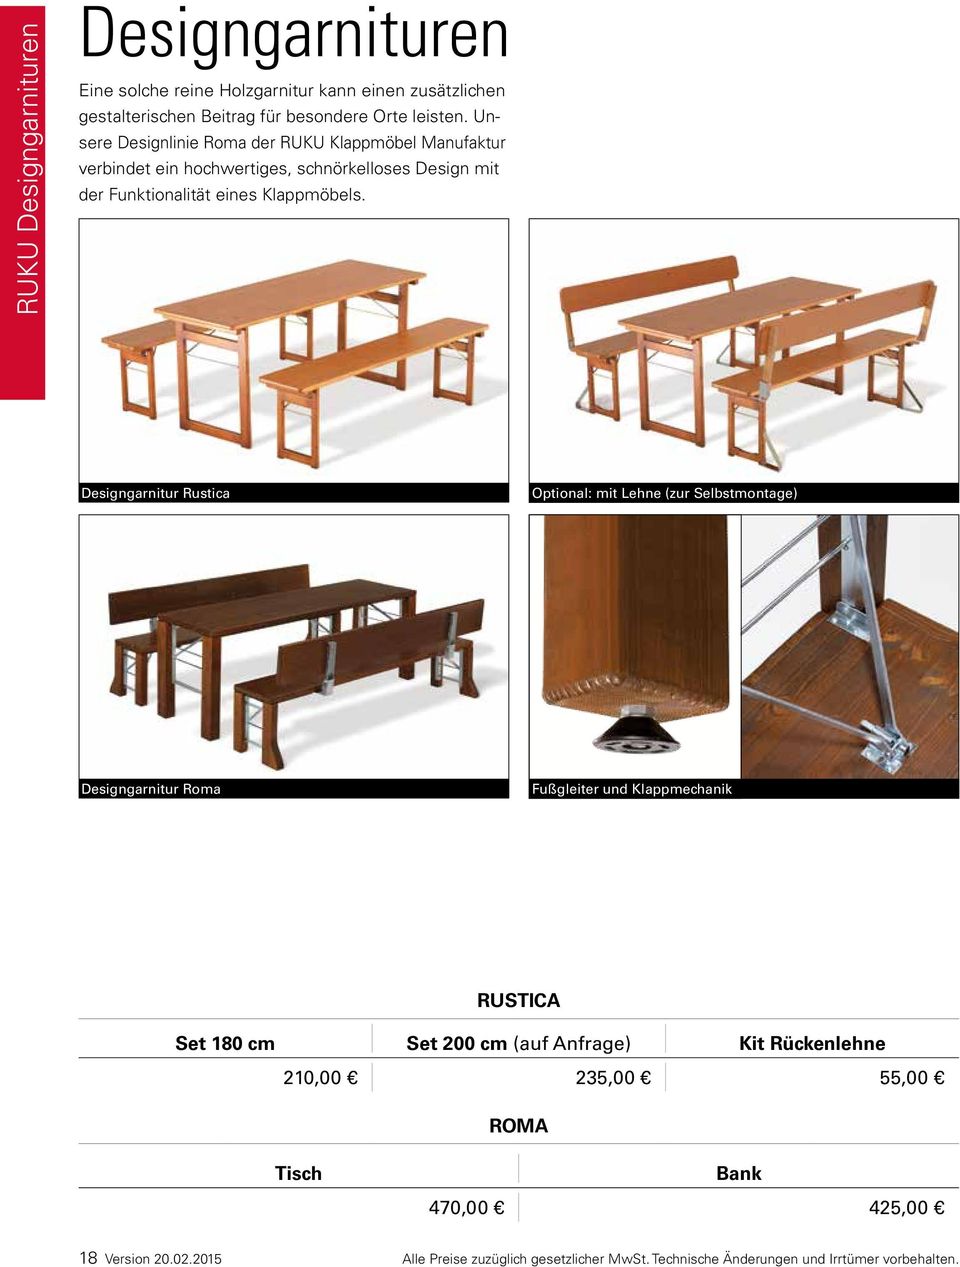 Designgarnitur Rustica Optional: mit Lehne (zur Selbstmontage) Designgarnitur Roma Fußgleiter und Klappmechanik RUSTICA Set 180 cm Set 200 cm (auf Anfrage)